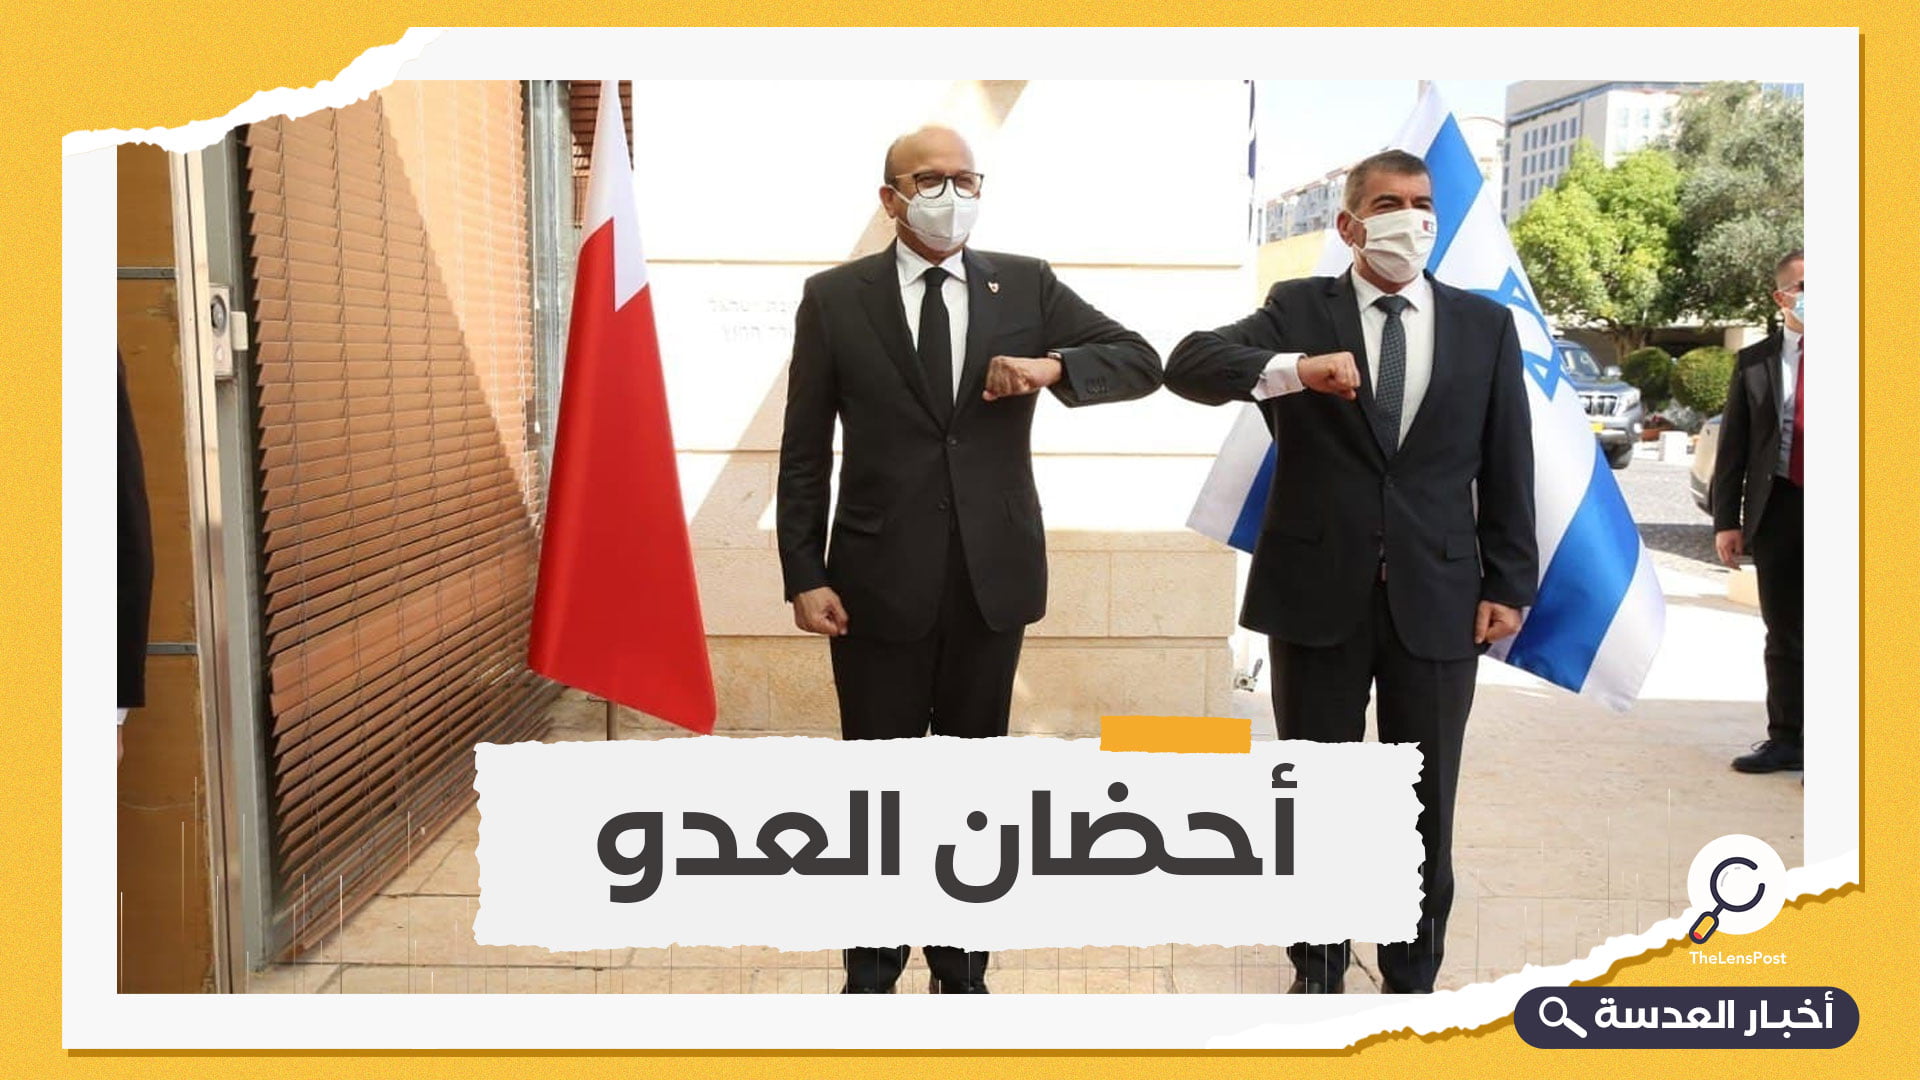 بوجه مكشوف .. البحرين تؤكد تعاونها الأمني والعسكري مع إسرائيل